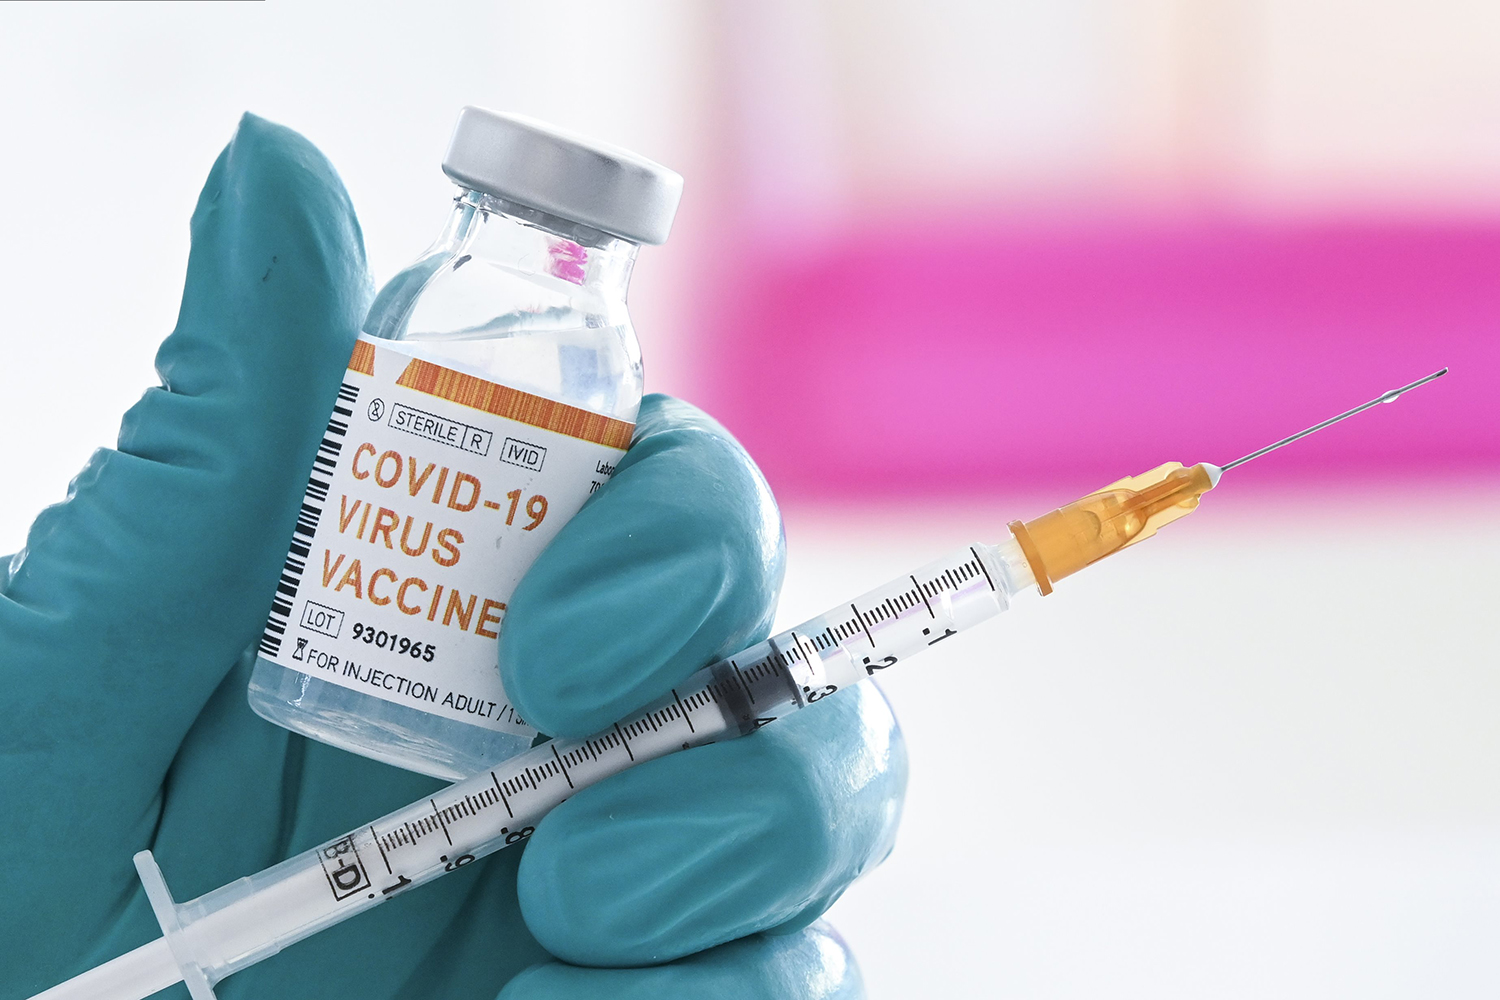 Vacxin Covid-19 không chỉ giúp cho bạn phòng ngừa và hạn chế những biến chứng nghiêm trọng của virus